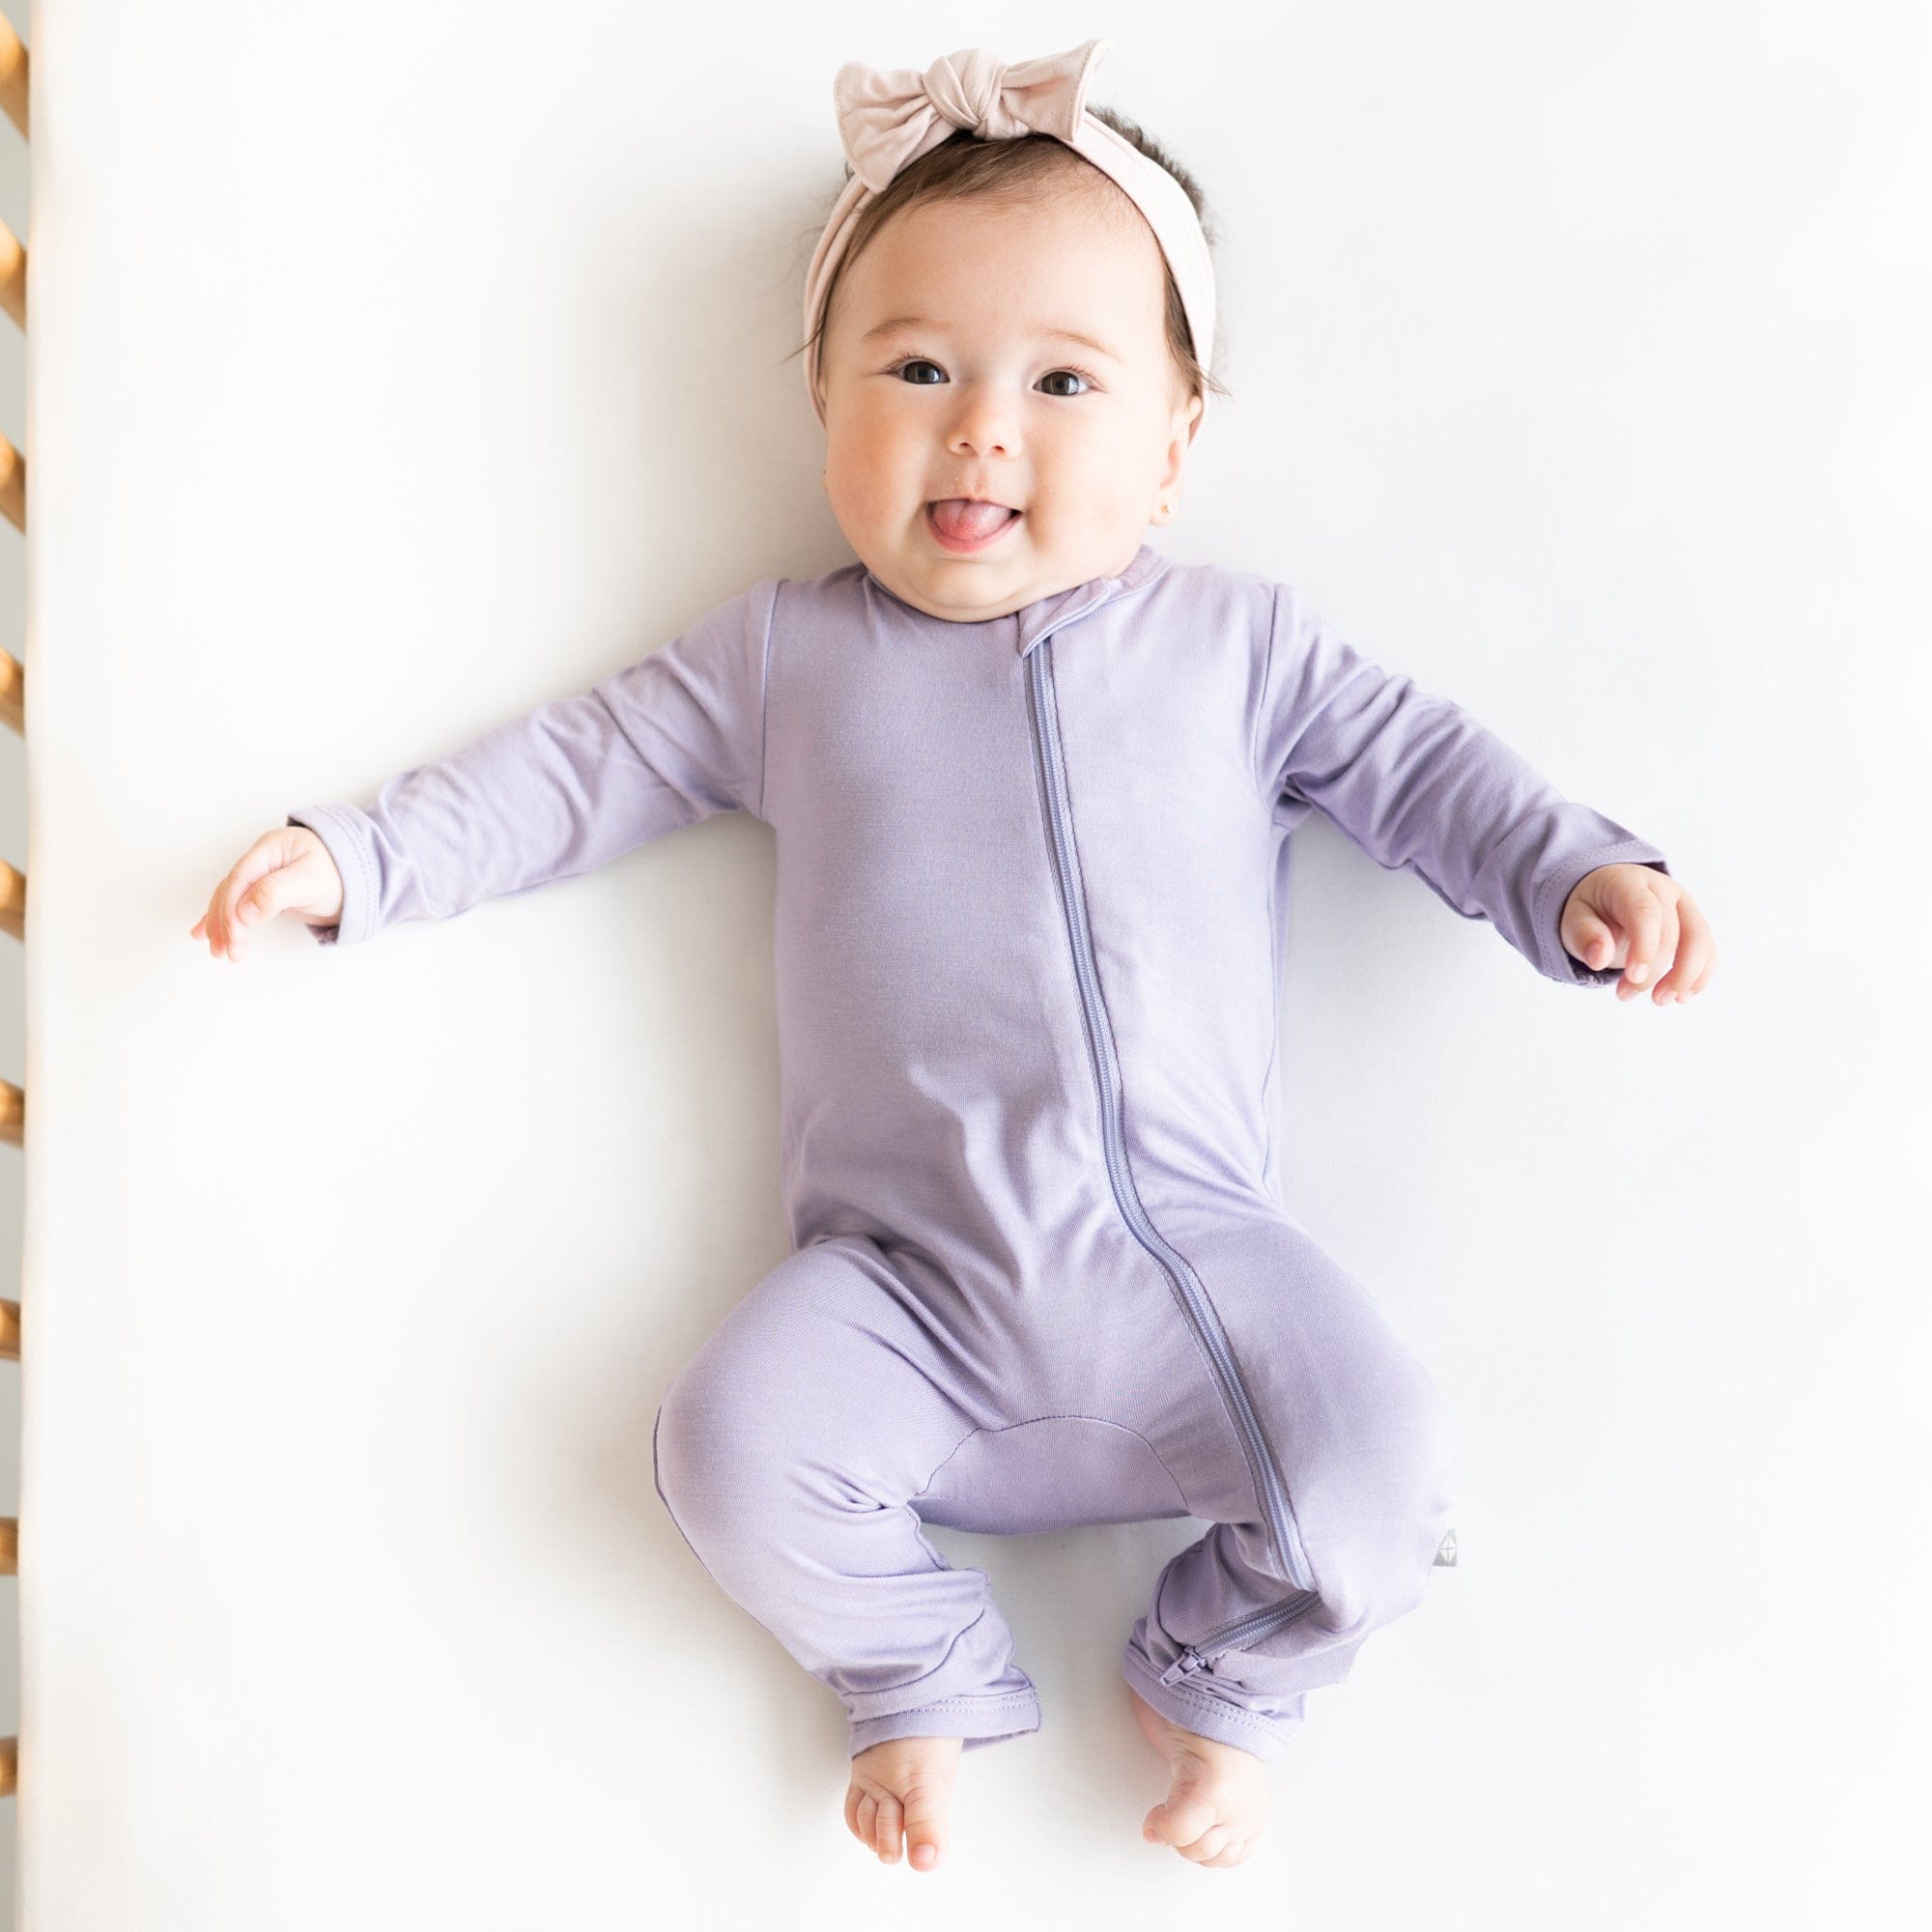 Infant wearing Kyte Baby Zippered Romper in Taro purple